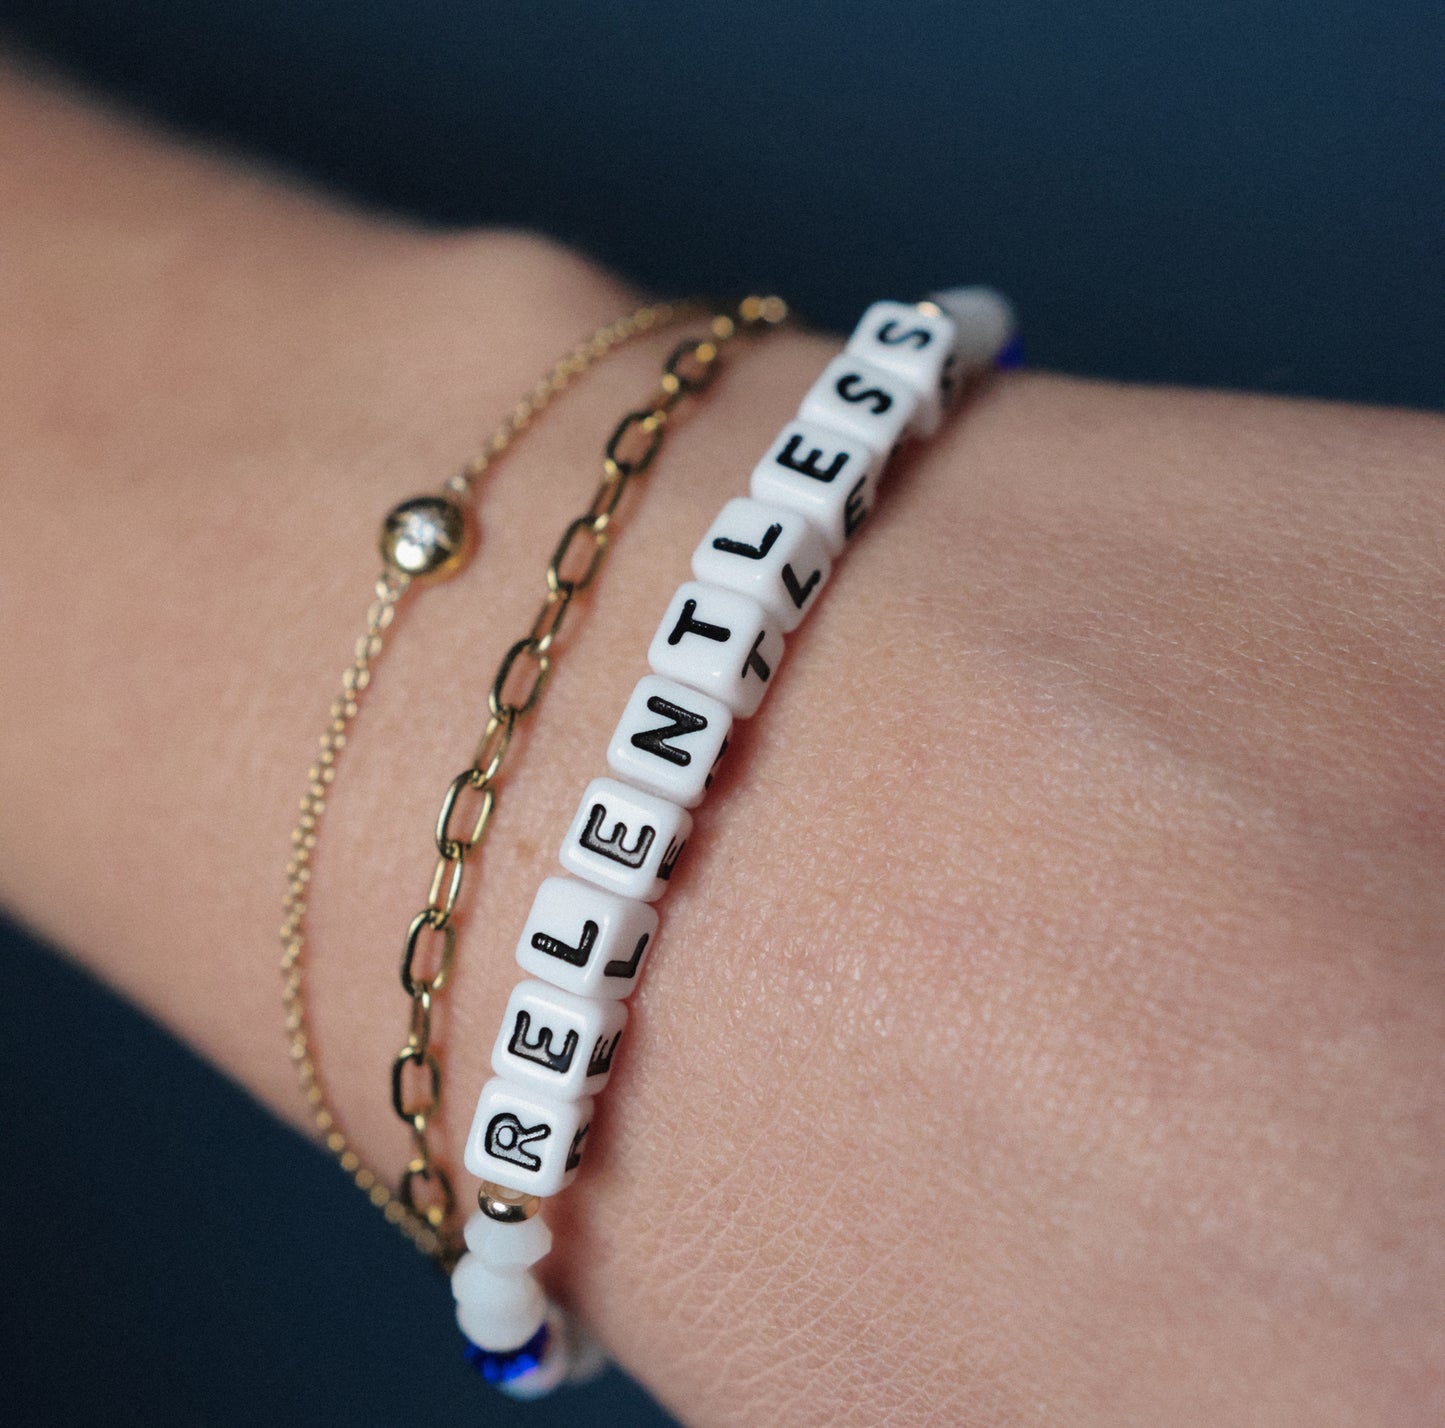 Relentless Bracelet by Little Words Project